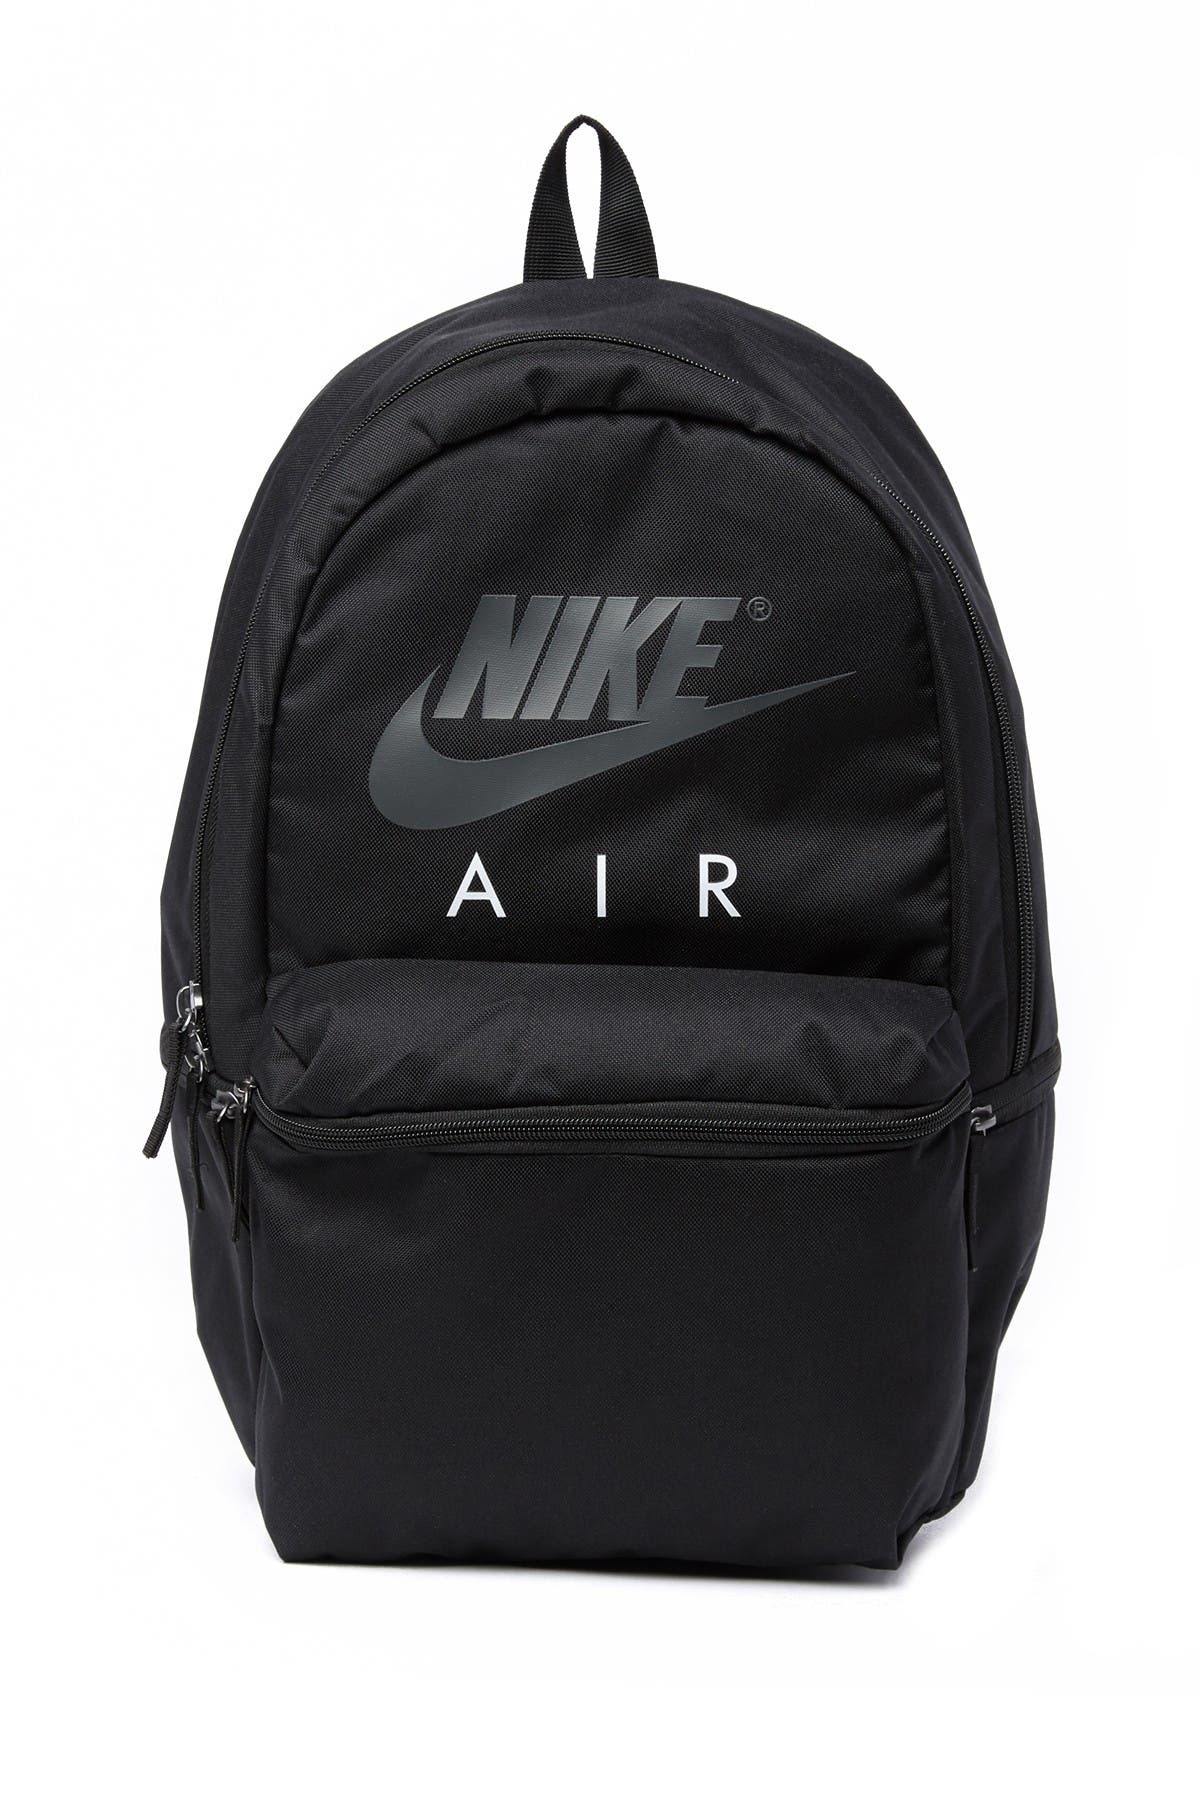 white nike air backpack